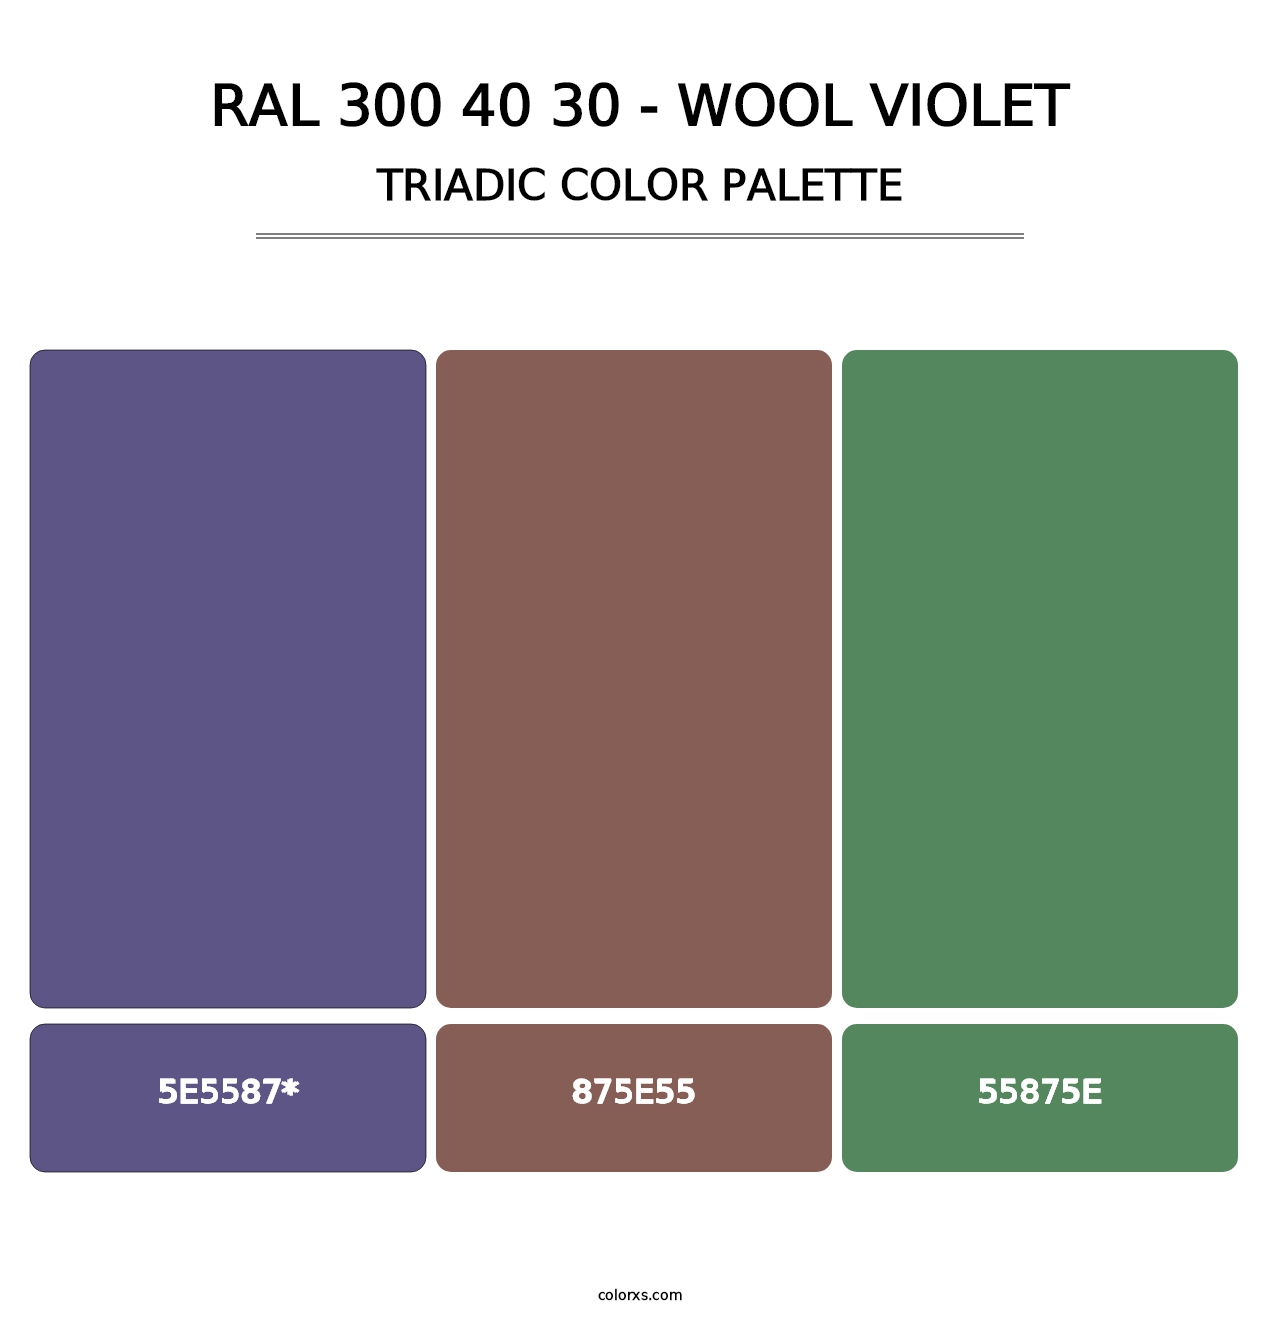 RAL 300 40 30 - Wool Violet - Triadic Color Palette